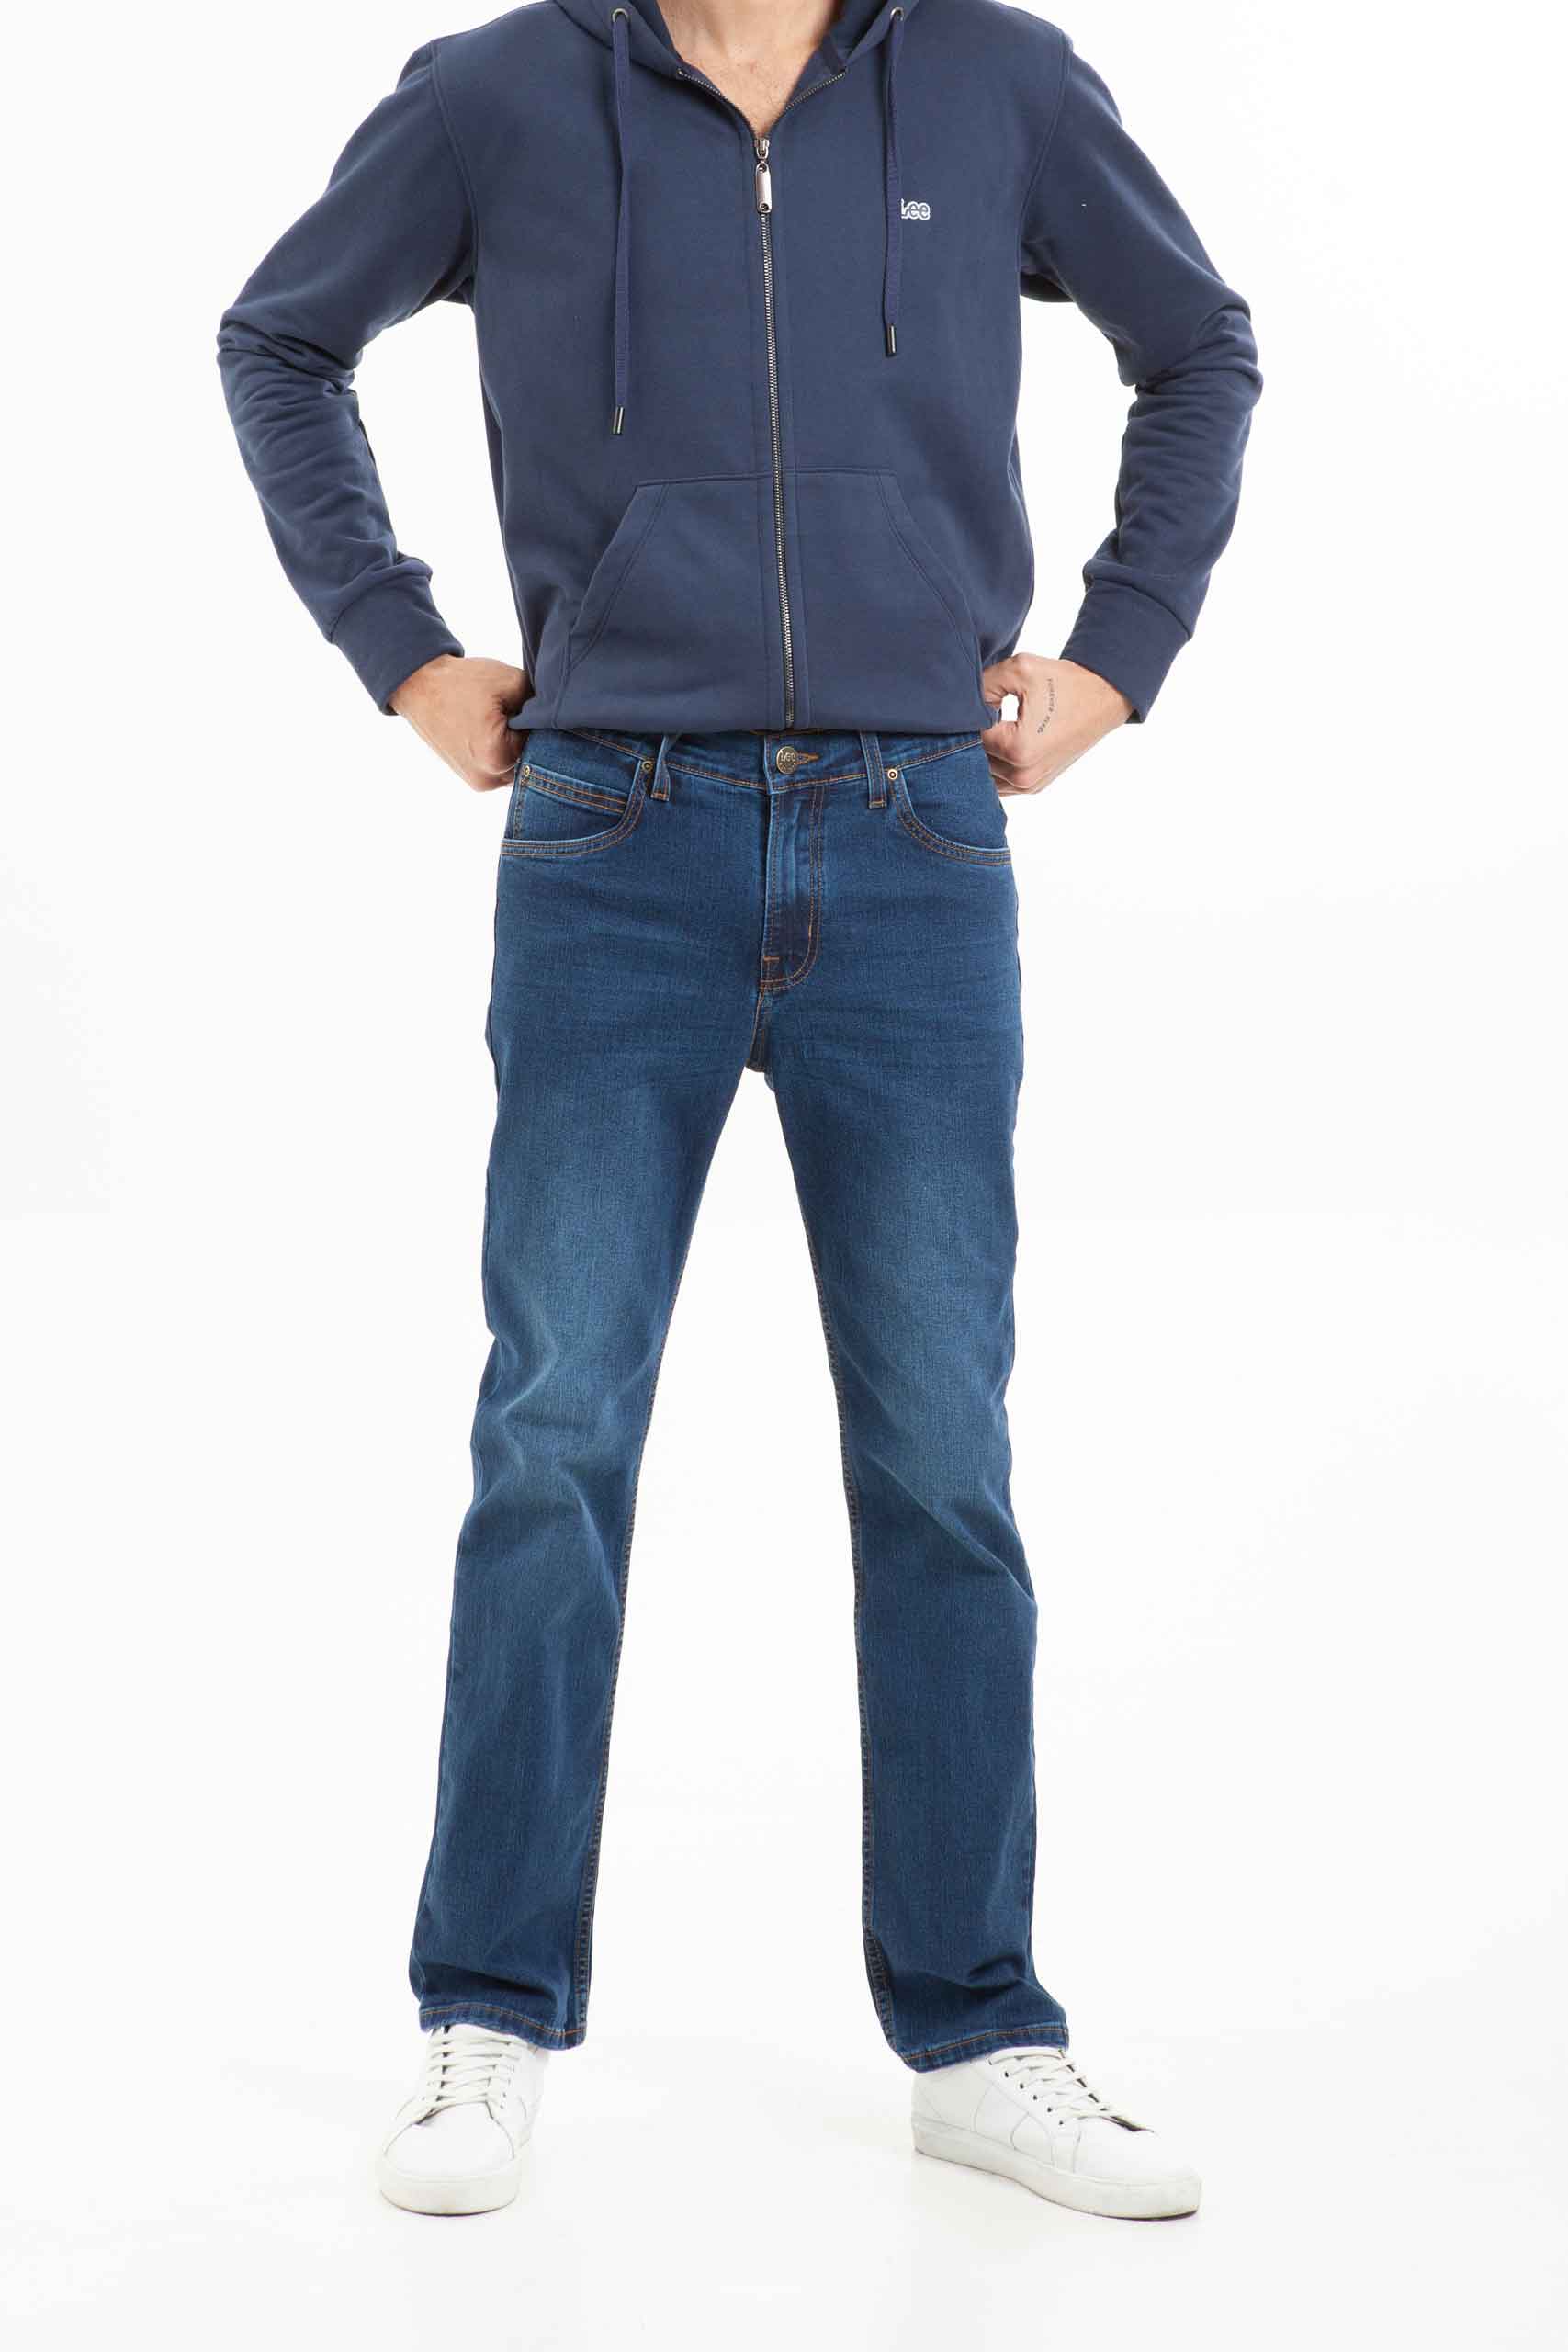 Vista frontal de jean de pierna recta con dos bolsillos color azul marca Lee